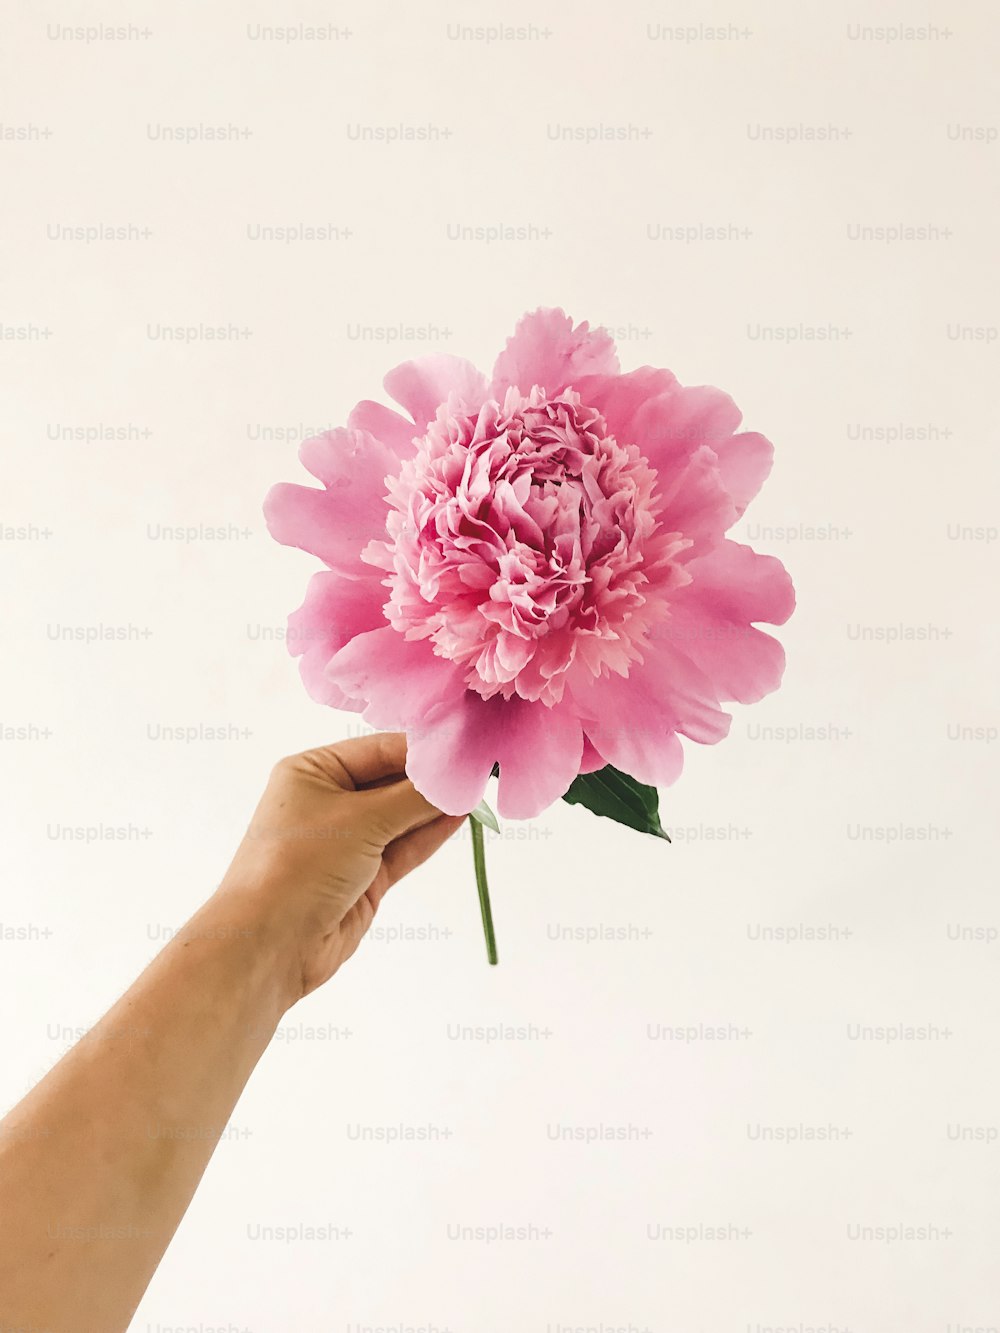 Main tenant de grandes fleurs de pivoine rose sur fond blanc. Fleuriste arrangeant un décor floral pour la célébration. Bonjour le concept printanier